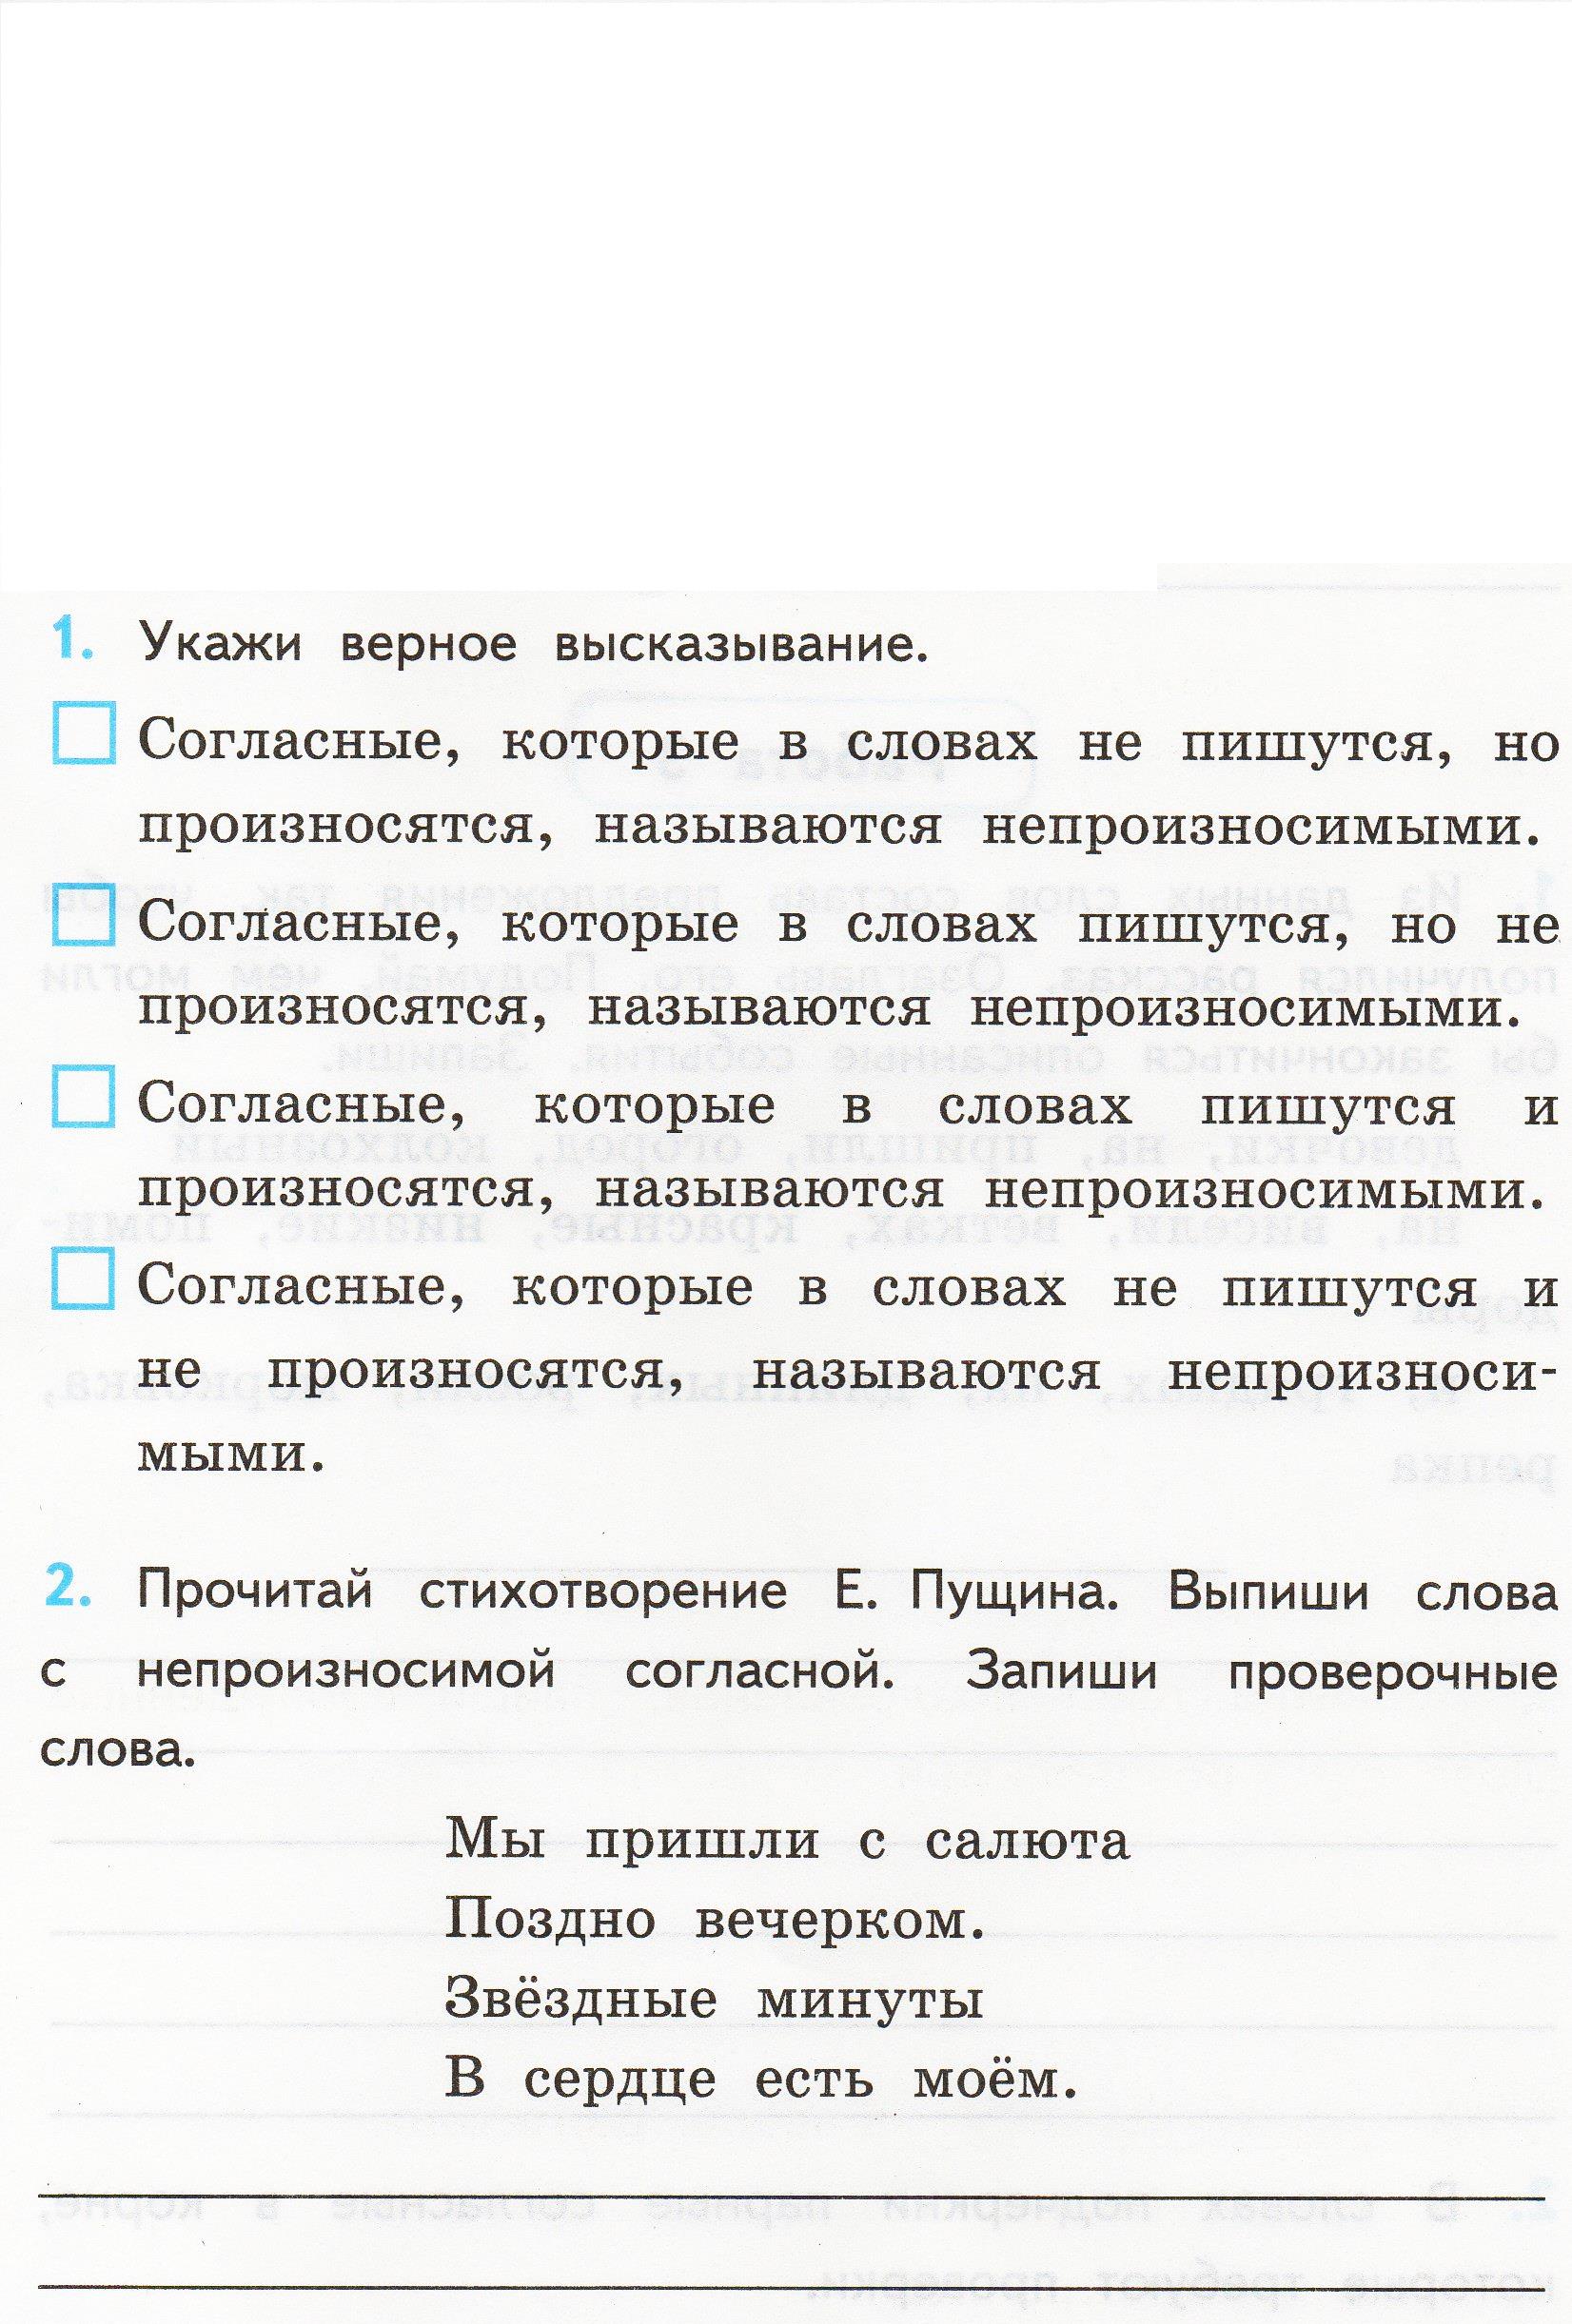 Рабочая программа по русскому языку. 3 класс. Система Занкова